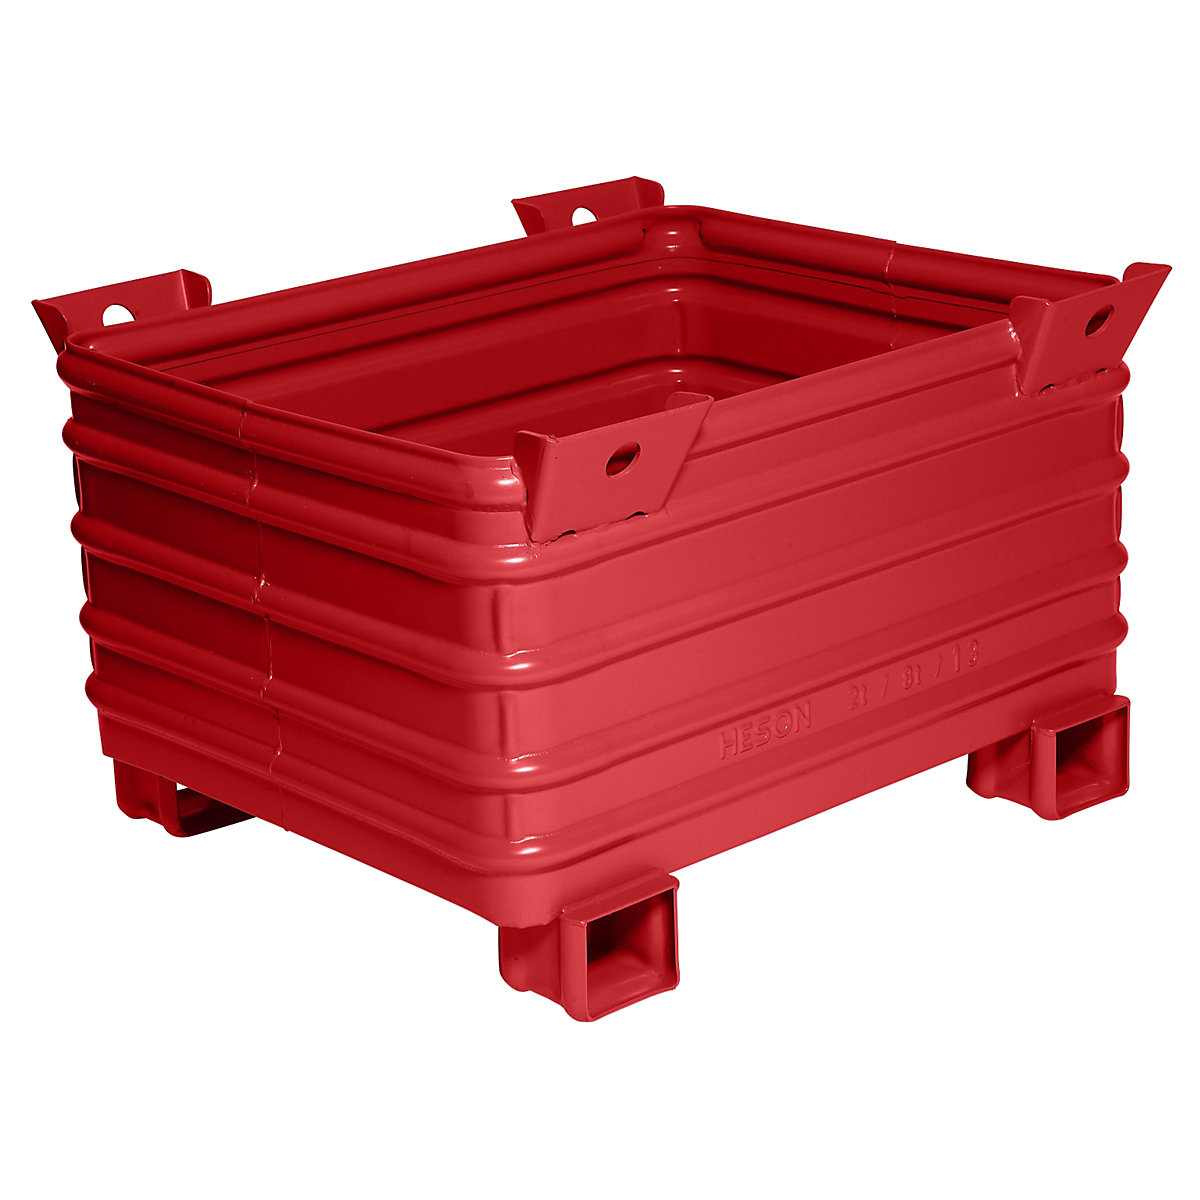 Heson Schwerlast-Stapelbehälter, BxL 800 x 1000 mm, mit U-förmigen Füßen, rot lackiert, ab 1 Stk